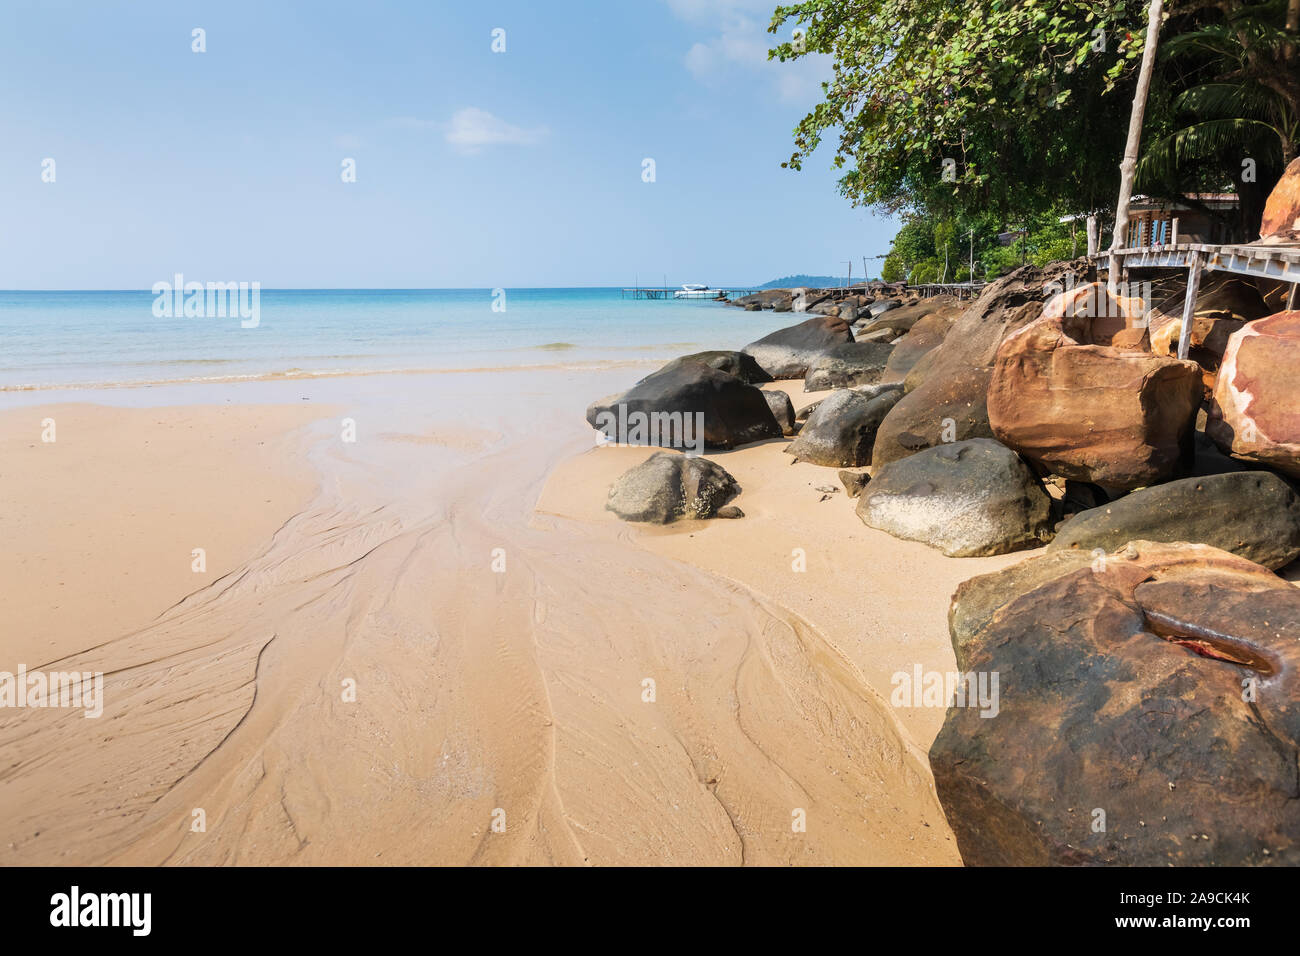 Playa natural de la isla del paraíso tropical para las vacaciones de verano, las piedras, la arena y el agua de mar turquesa Foto de stock